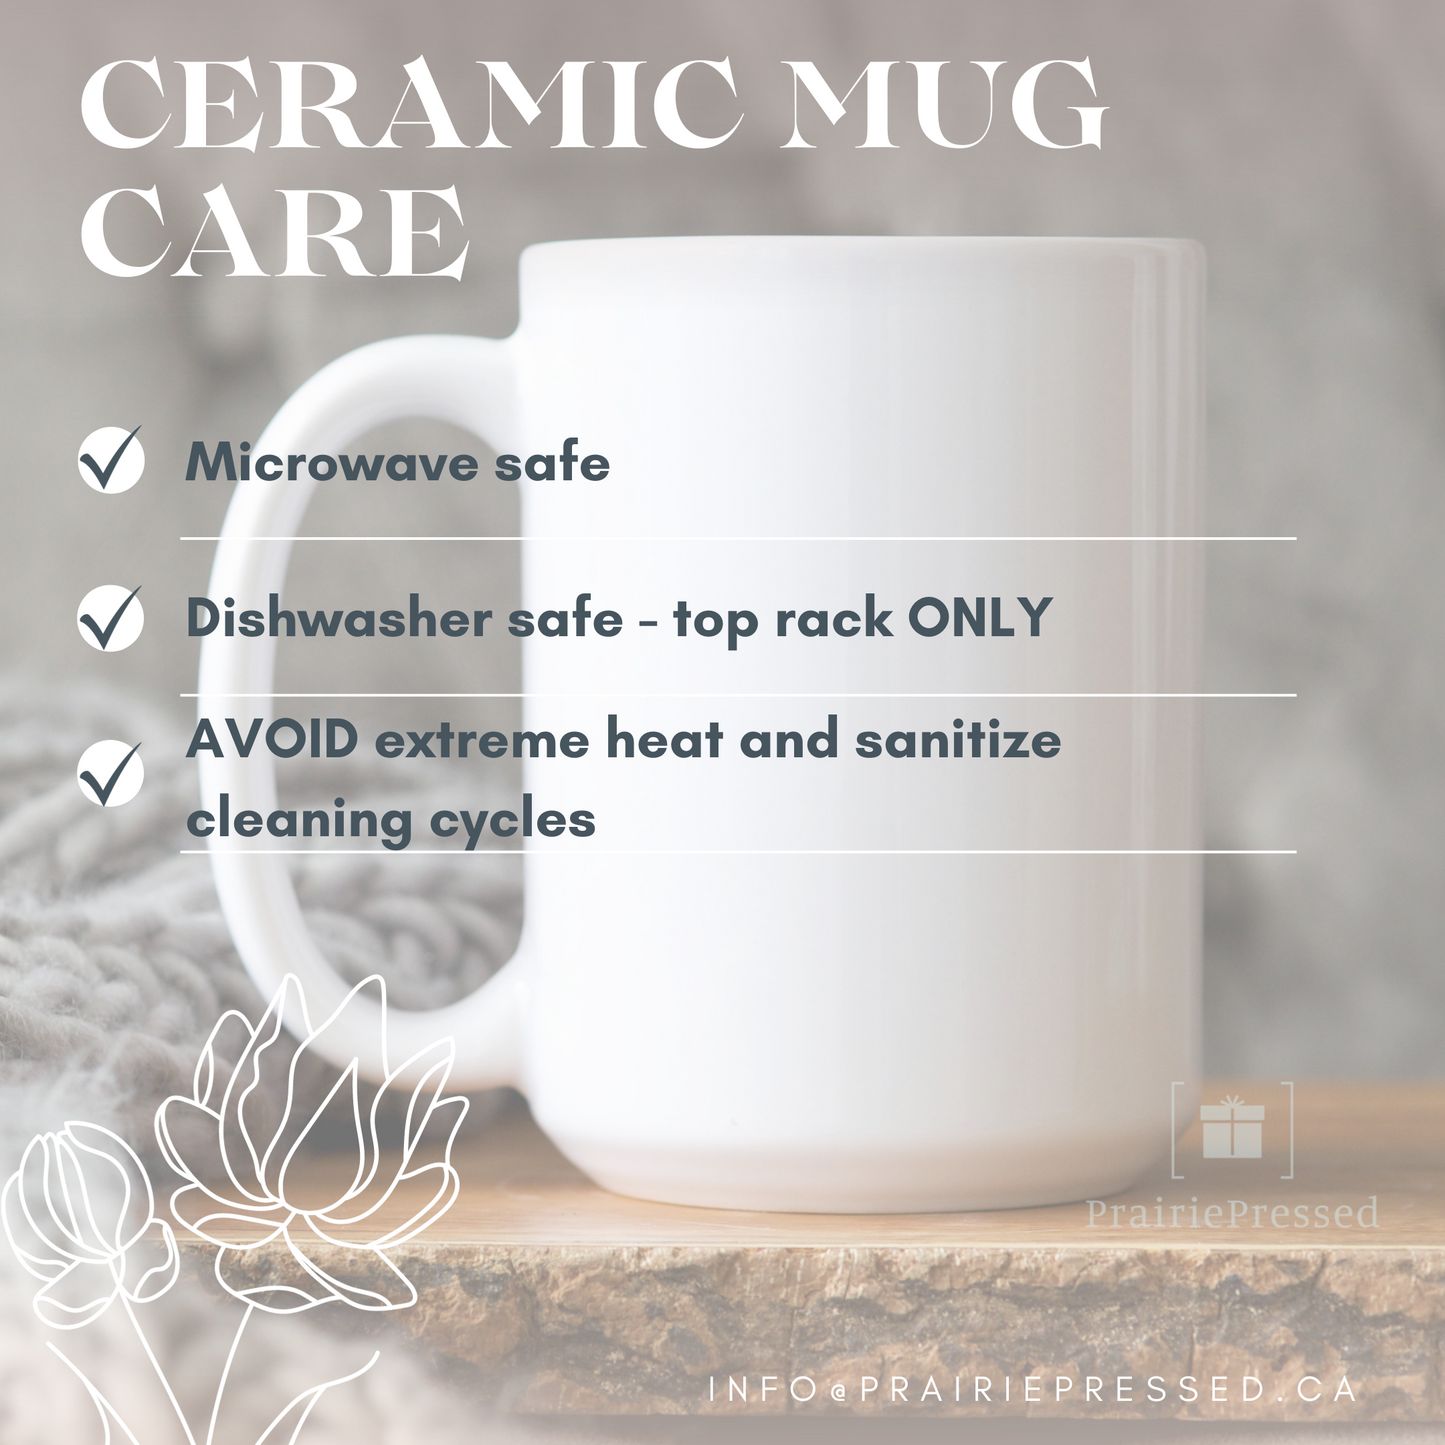 MOM EST 2024 Ceramic Mug for Mother's Day